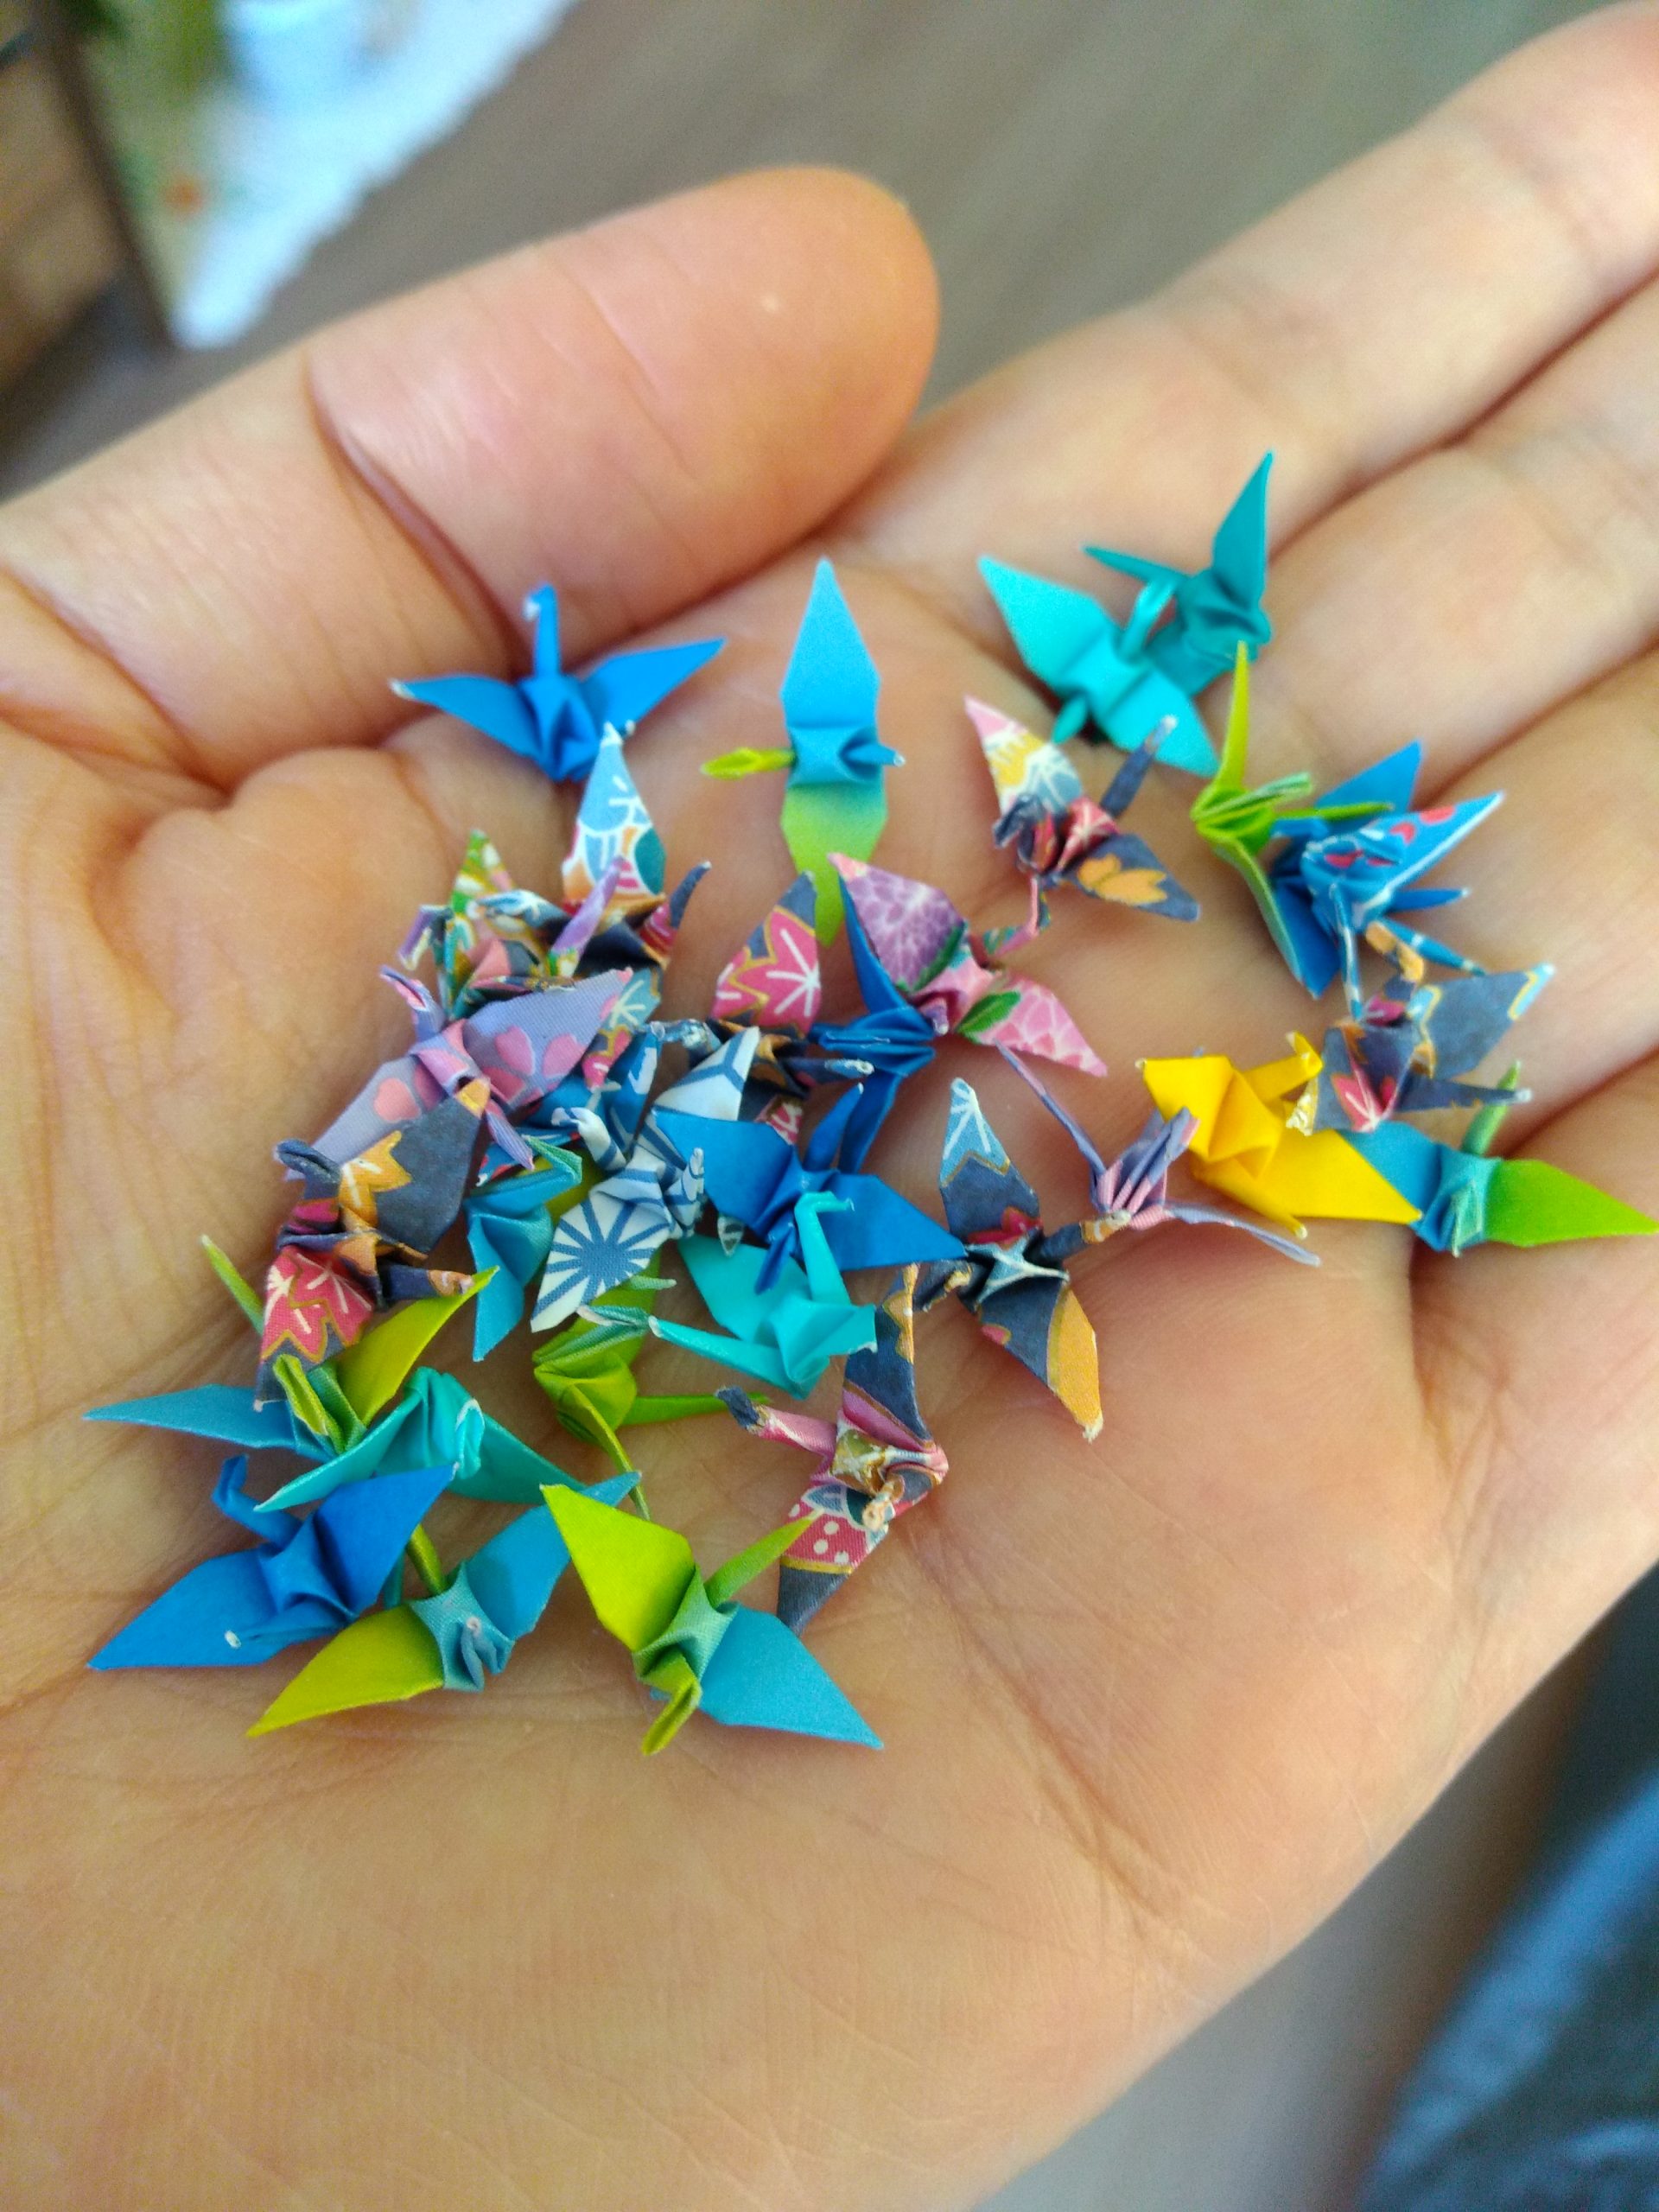 Yuki, origamista, Pelotas, RS